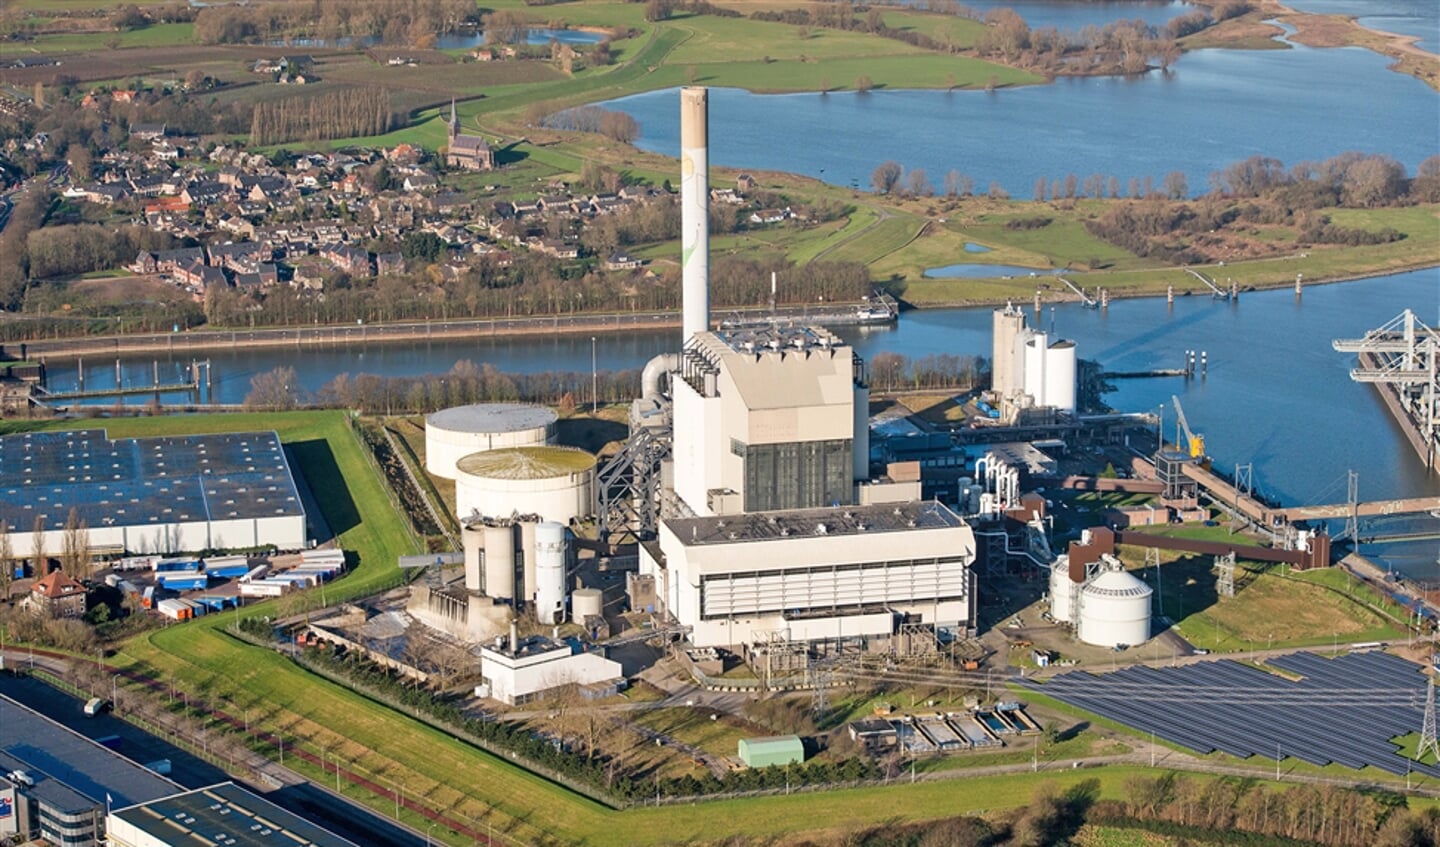 Kolen-biomassacentrale in Nijmegen.